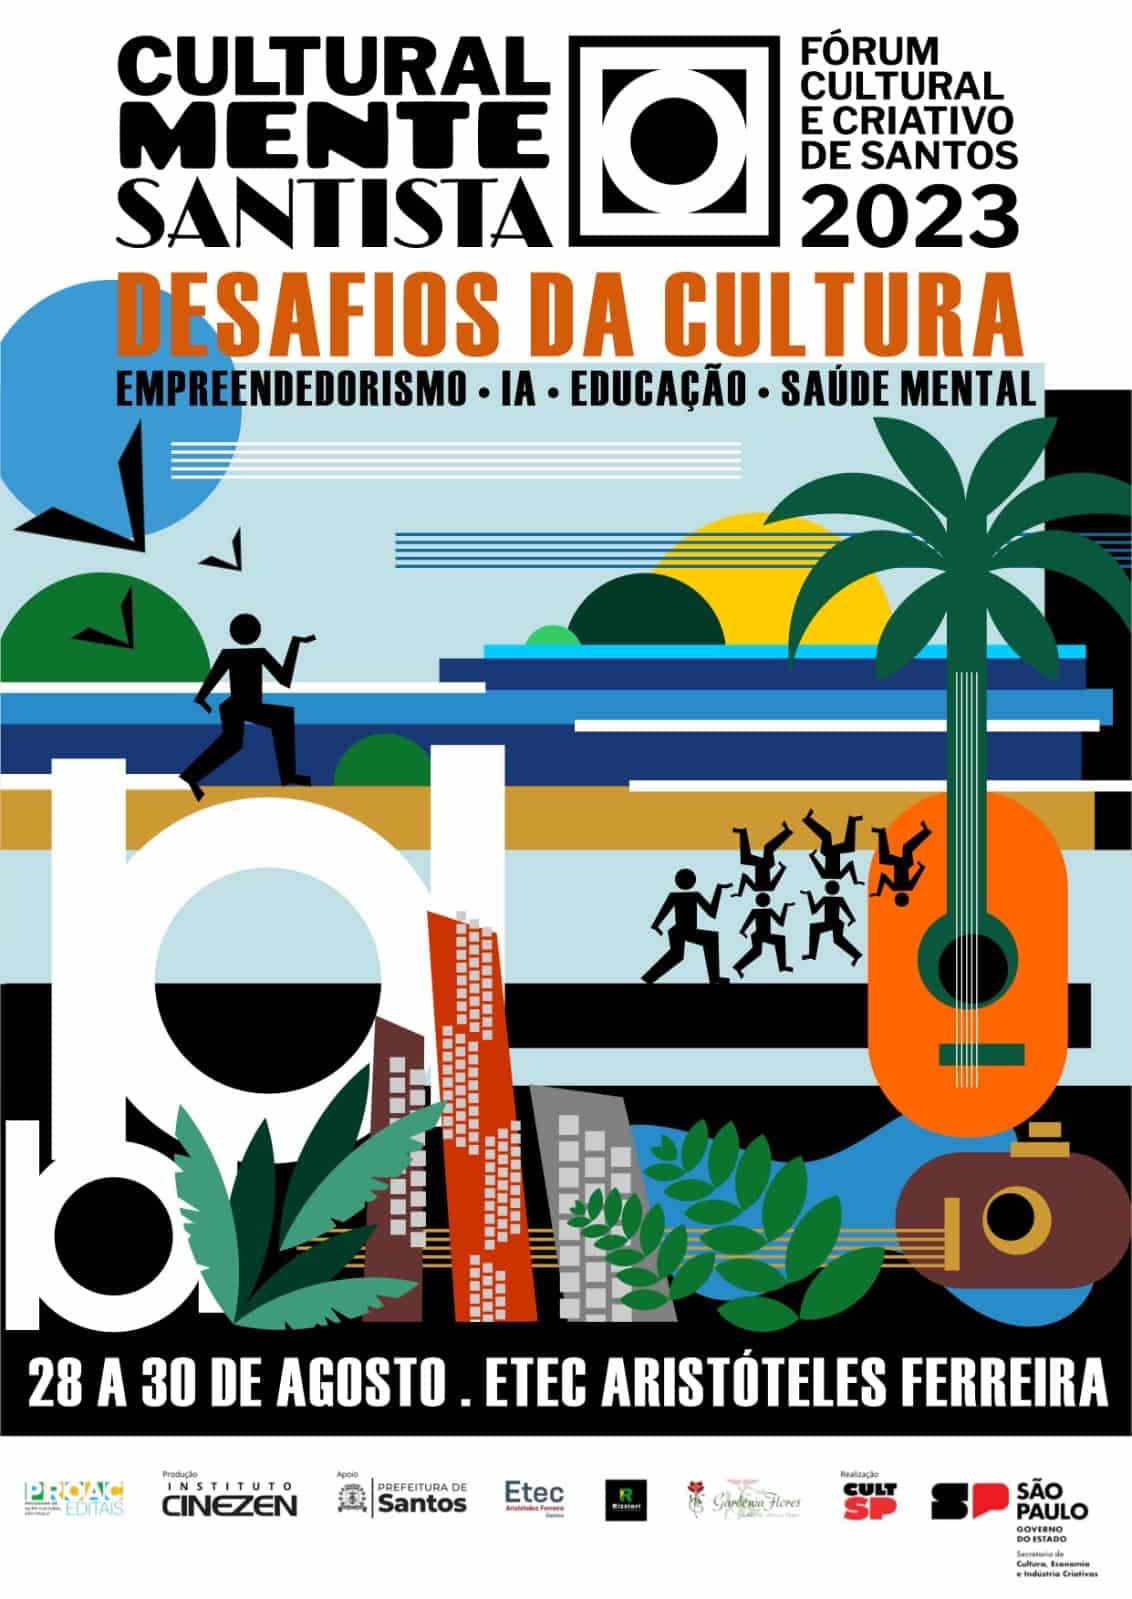 Educação - Escola Orlando Freire realiza exposição cultural a